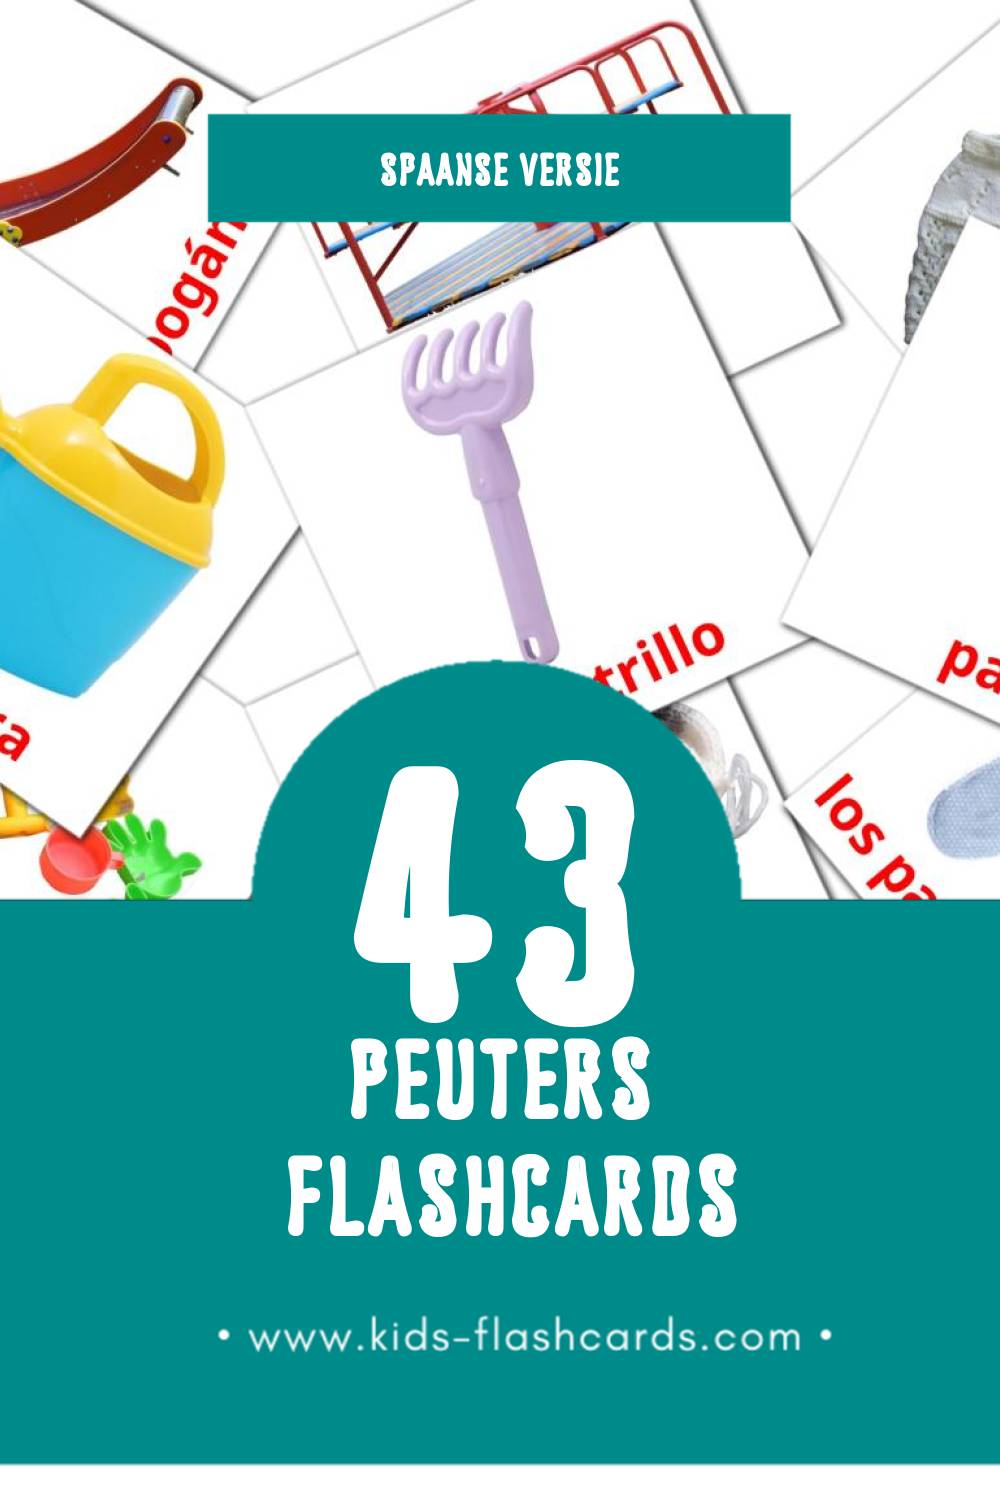 Visuele Bebé Flashcards voor Kleuters (43 kaarten in het Spaans)